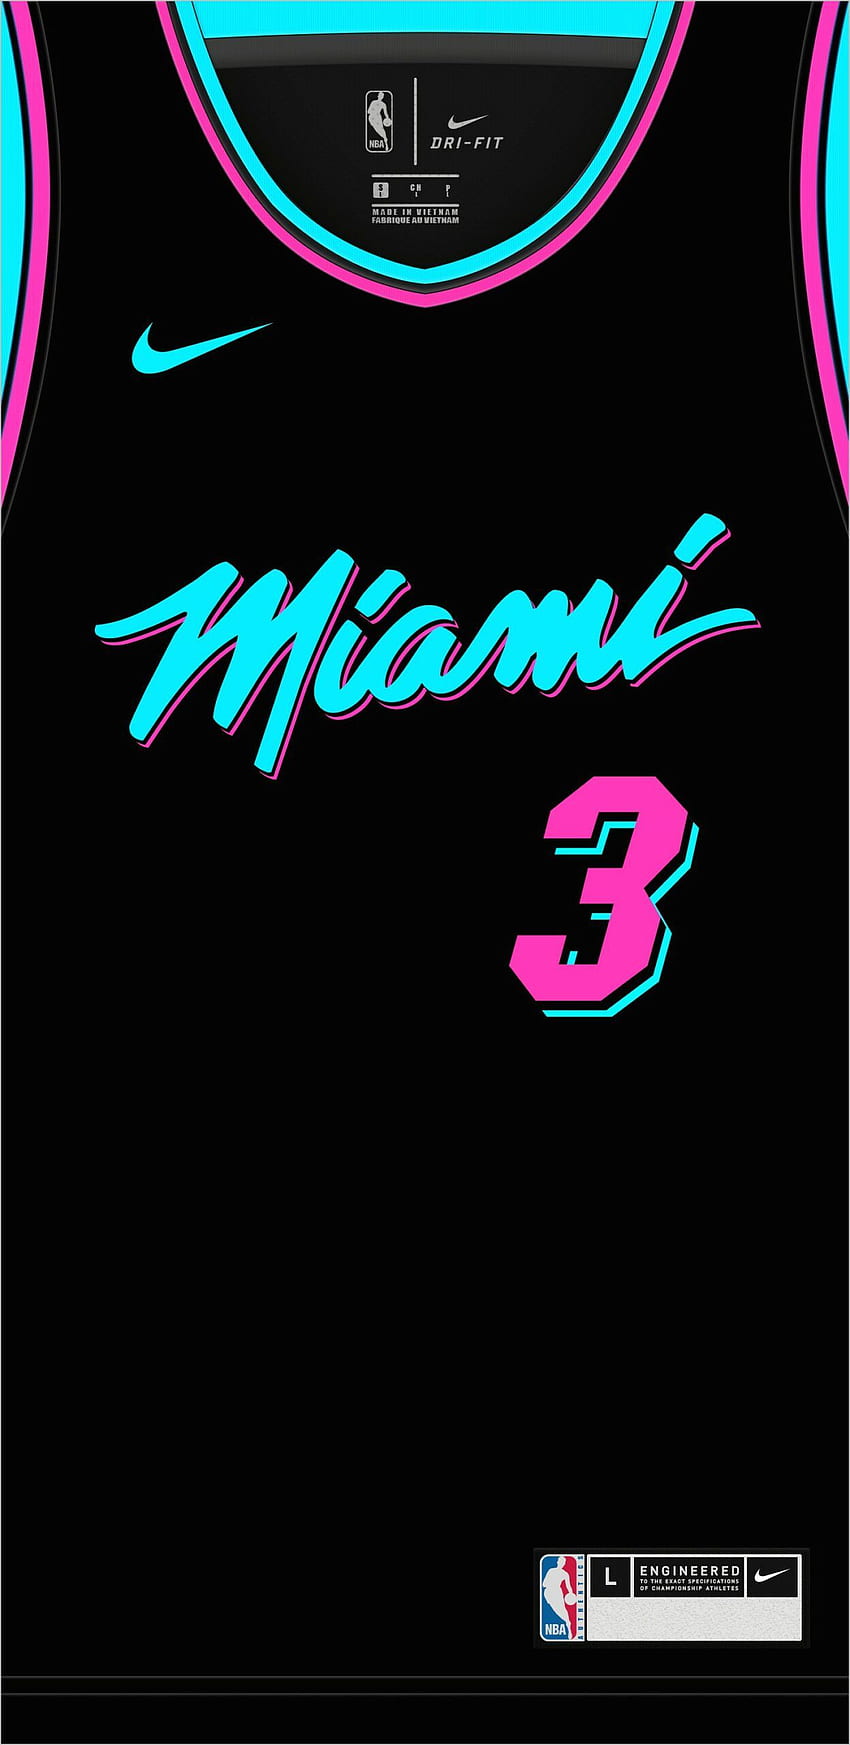 Nba Miami Vice in 2020. Nba miami heat, Nba, Miami heat バスケットボール HD電話の壁紙